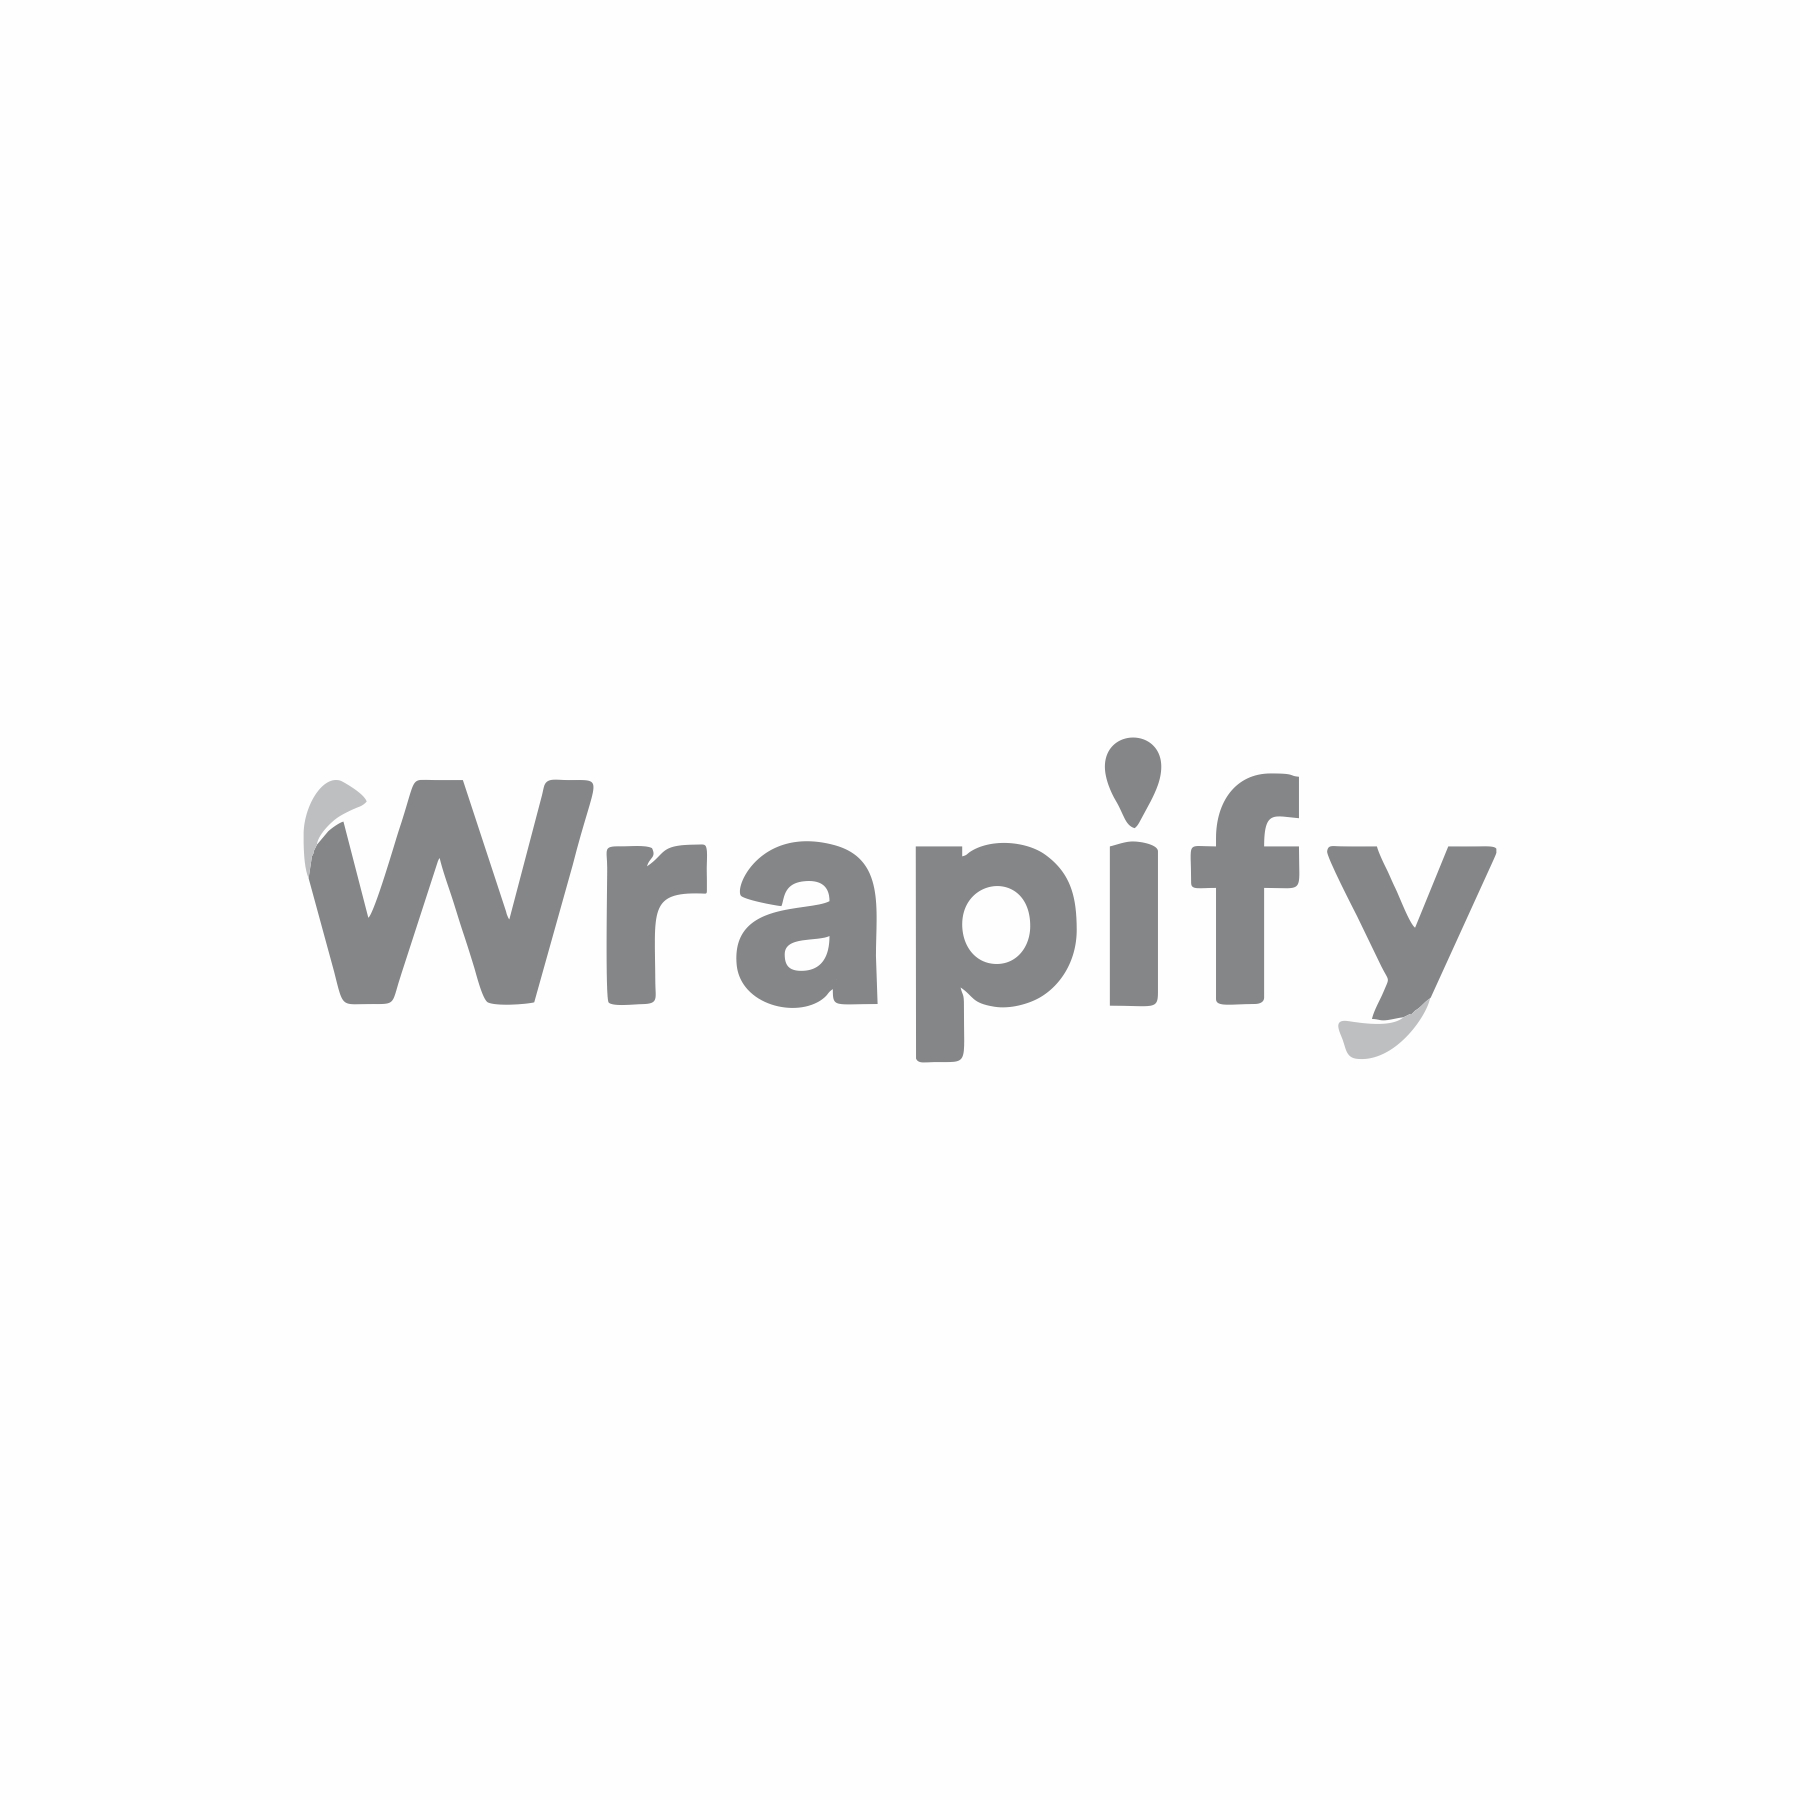 Wrapify Greyscale